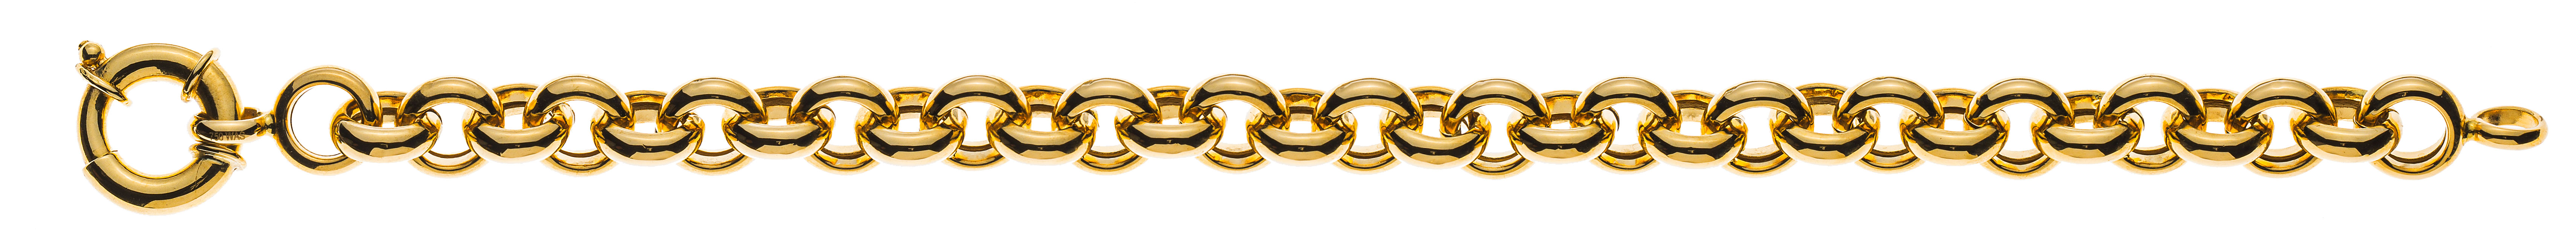 AURONOS Prestige Necklace yellow gold 18K semi-solid pea chain 50cm 9mm